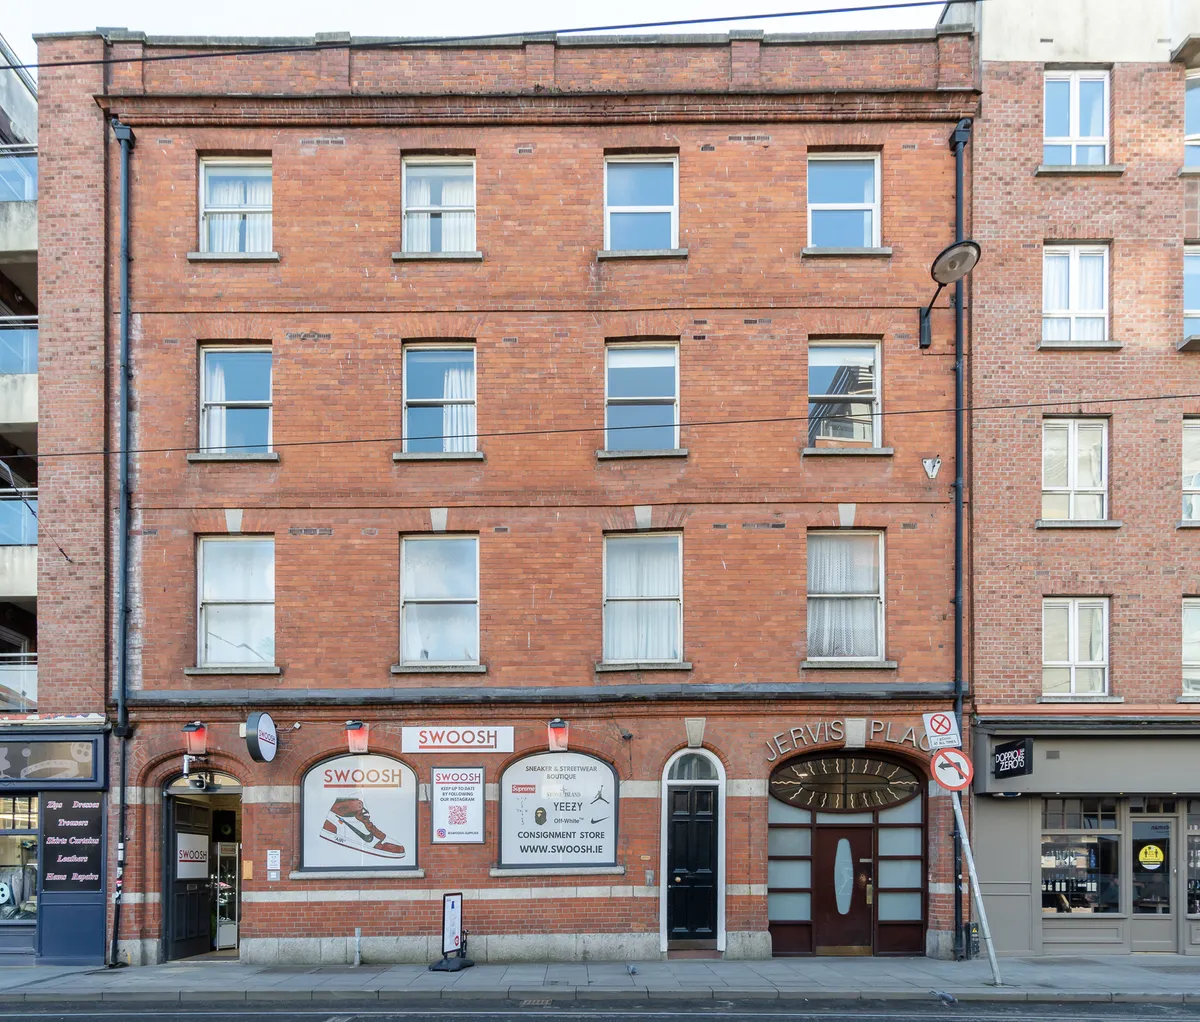 LWK - Apartment for sale - Apartment 38, Jervis Place, Dublin 1